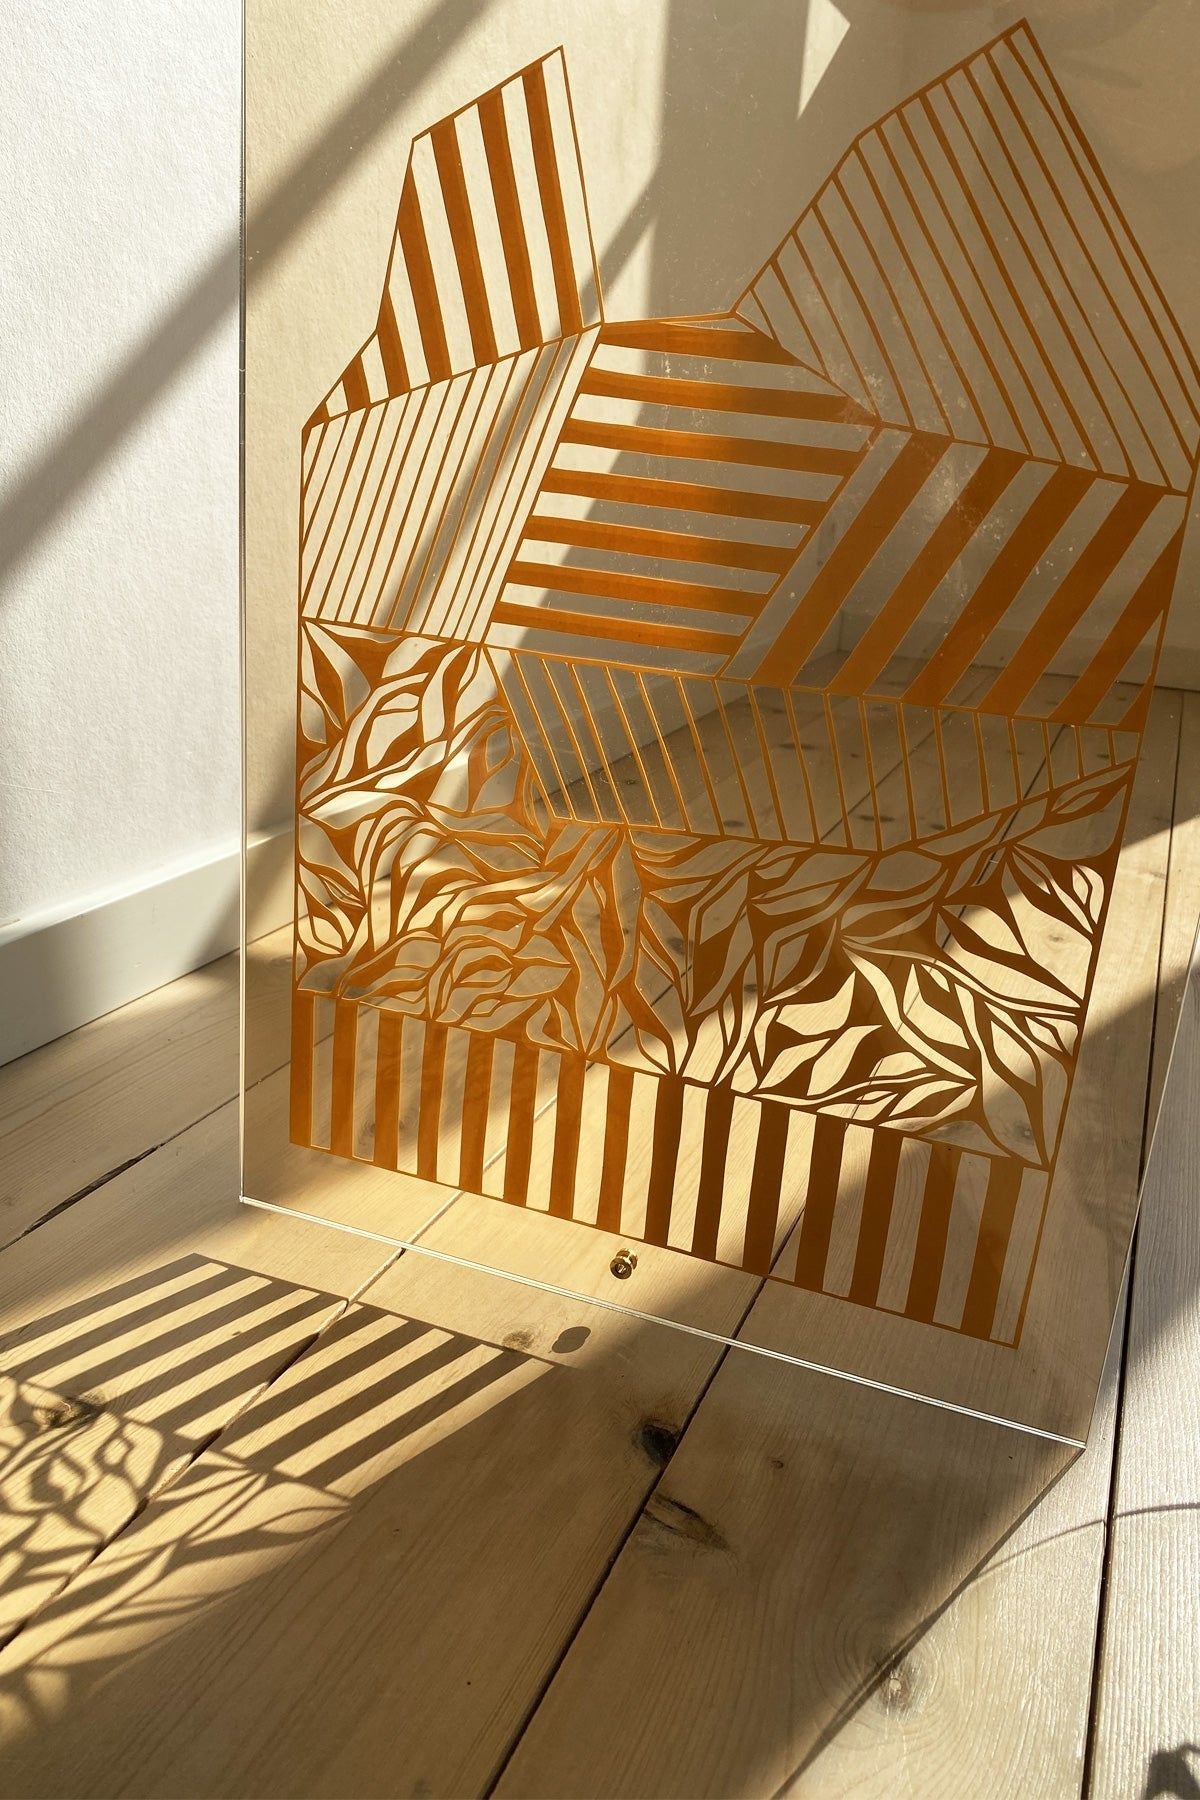 Studio About Papercut A3 Geometrisk rektangel, majs gul